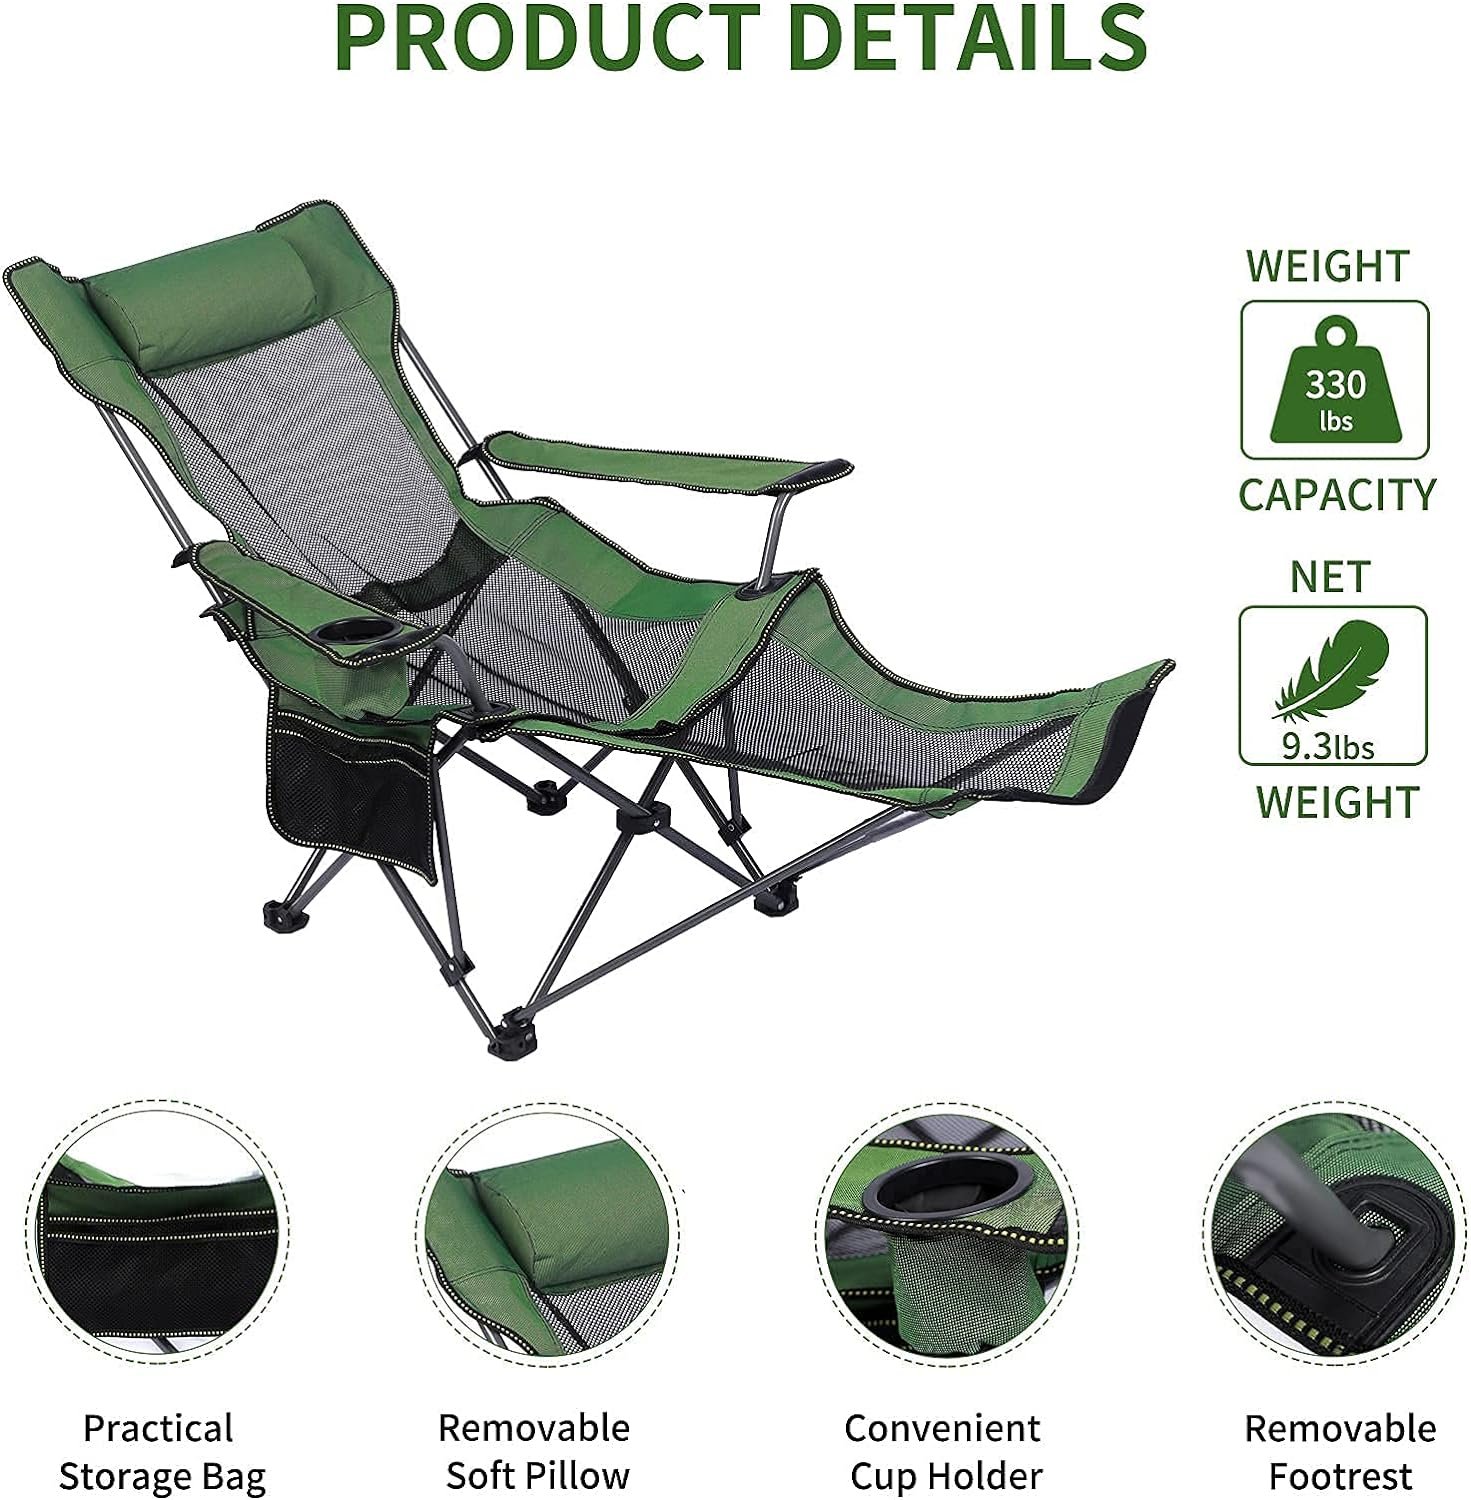 NURTUDIS Camping Lounge Chair Review